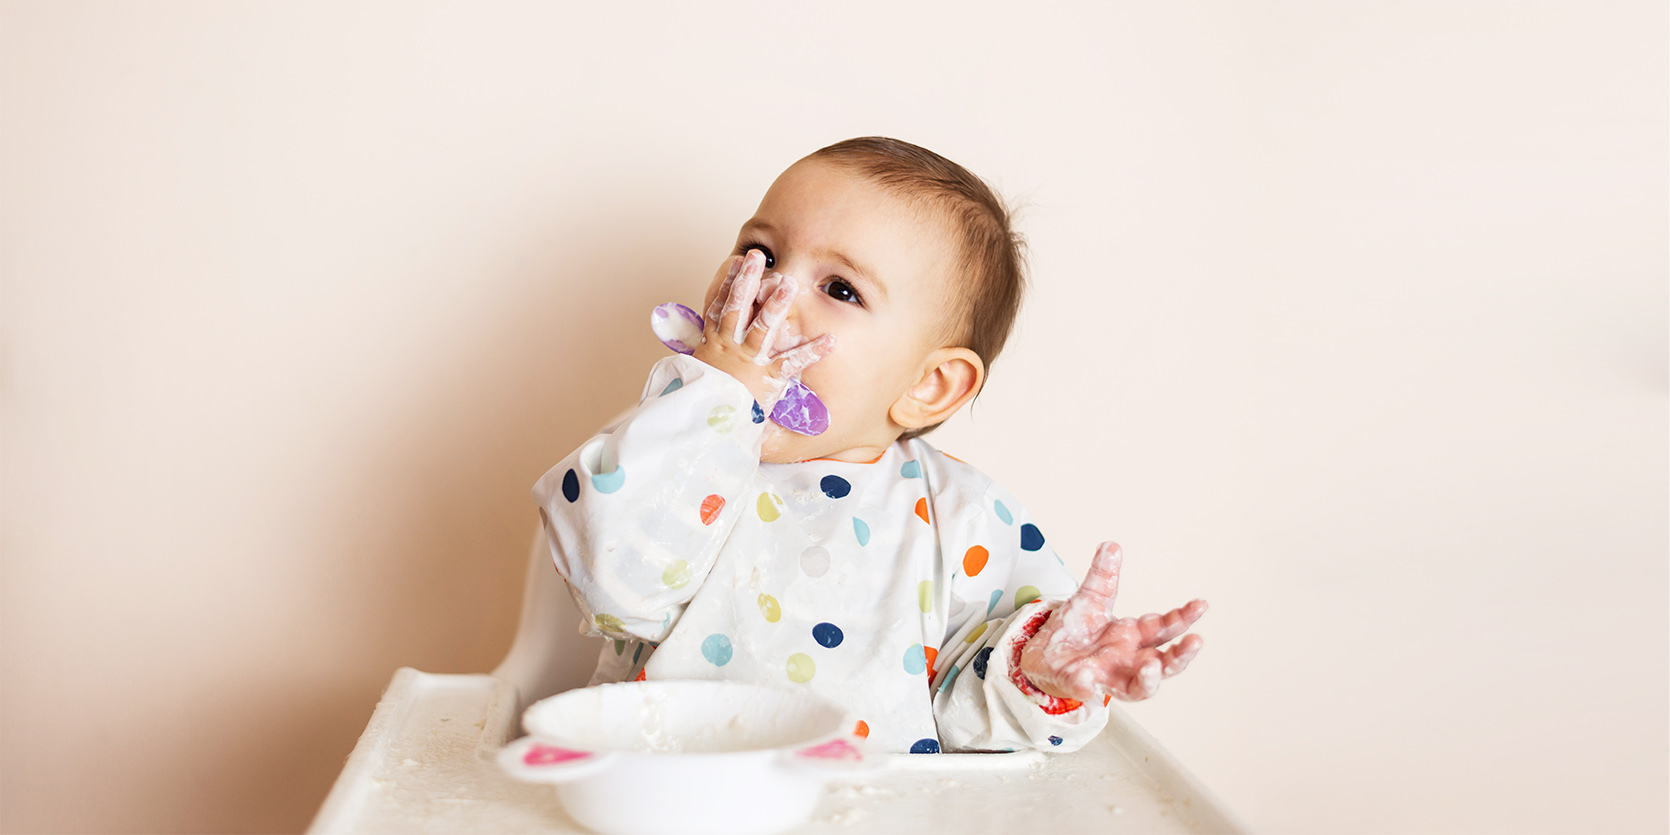 Jogurt dla niemowlaka - od kiedy i jaki podawać dziecku?